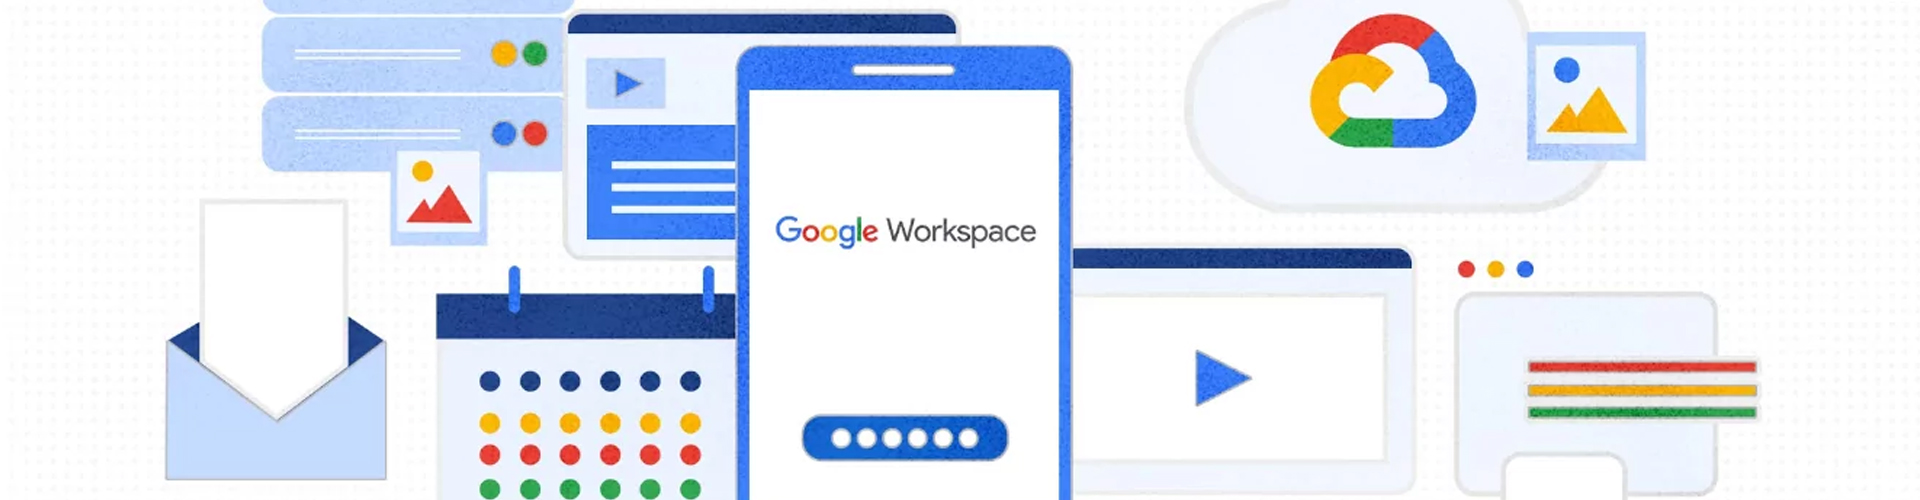 4 tính năng Google Workspace giúp tăng cường bảo mật cho doanh nghiệp